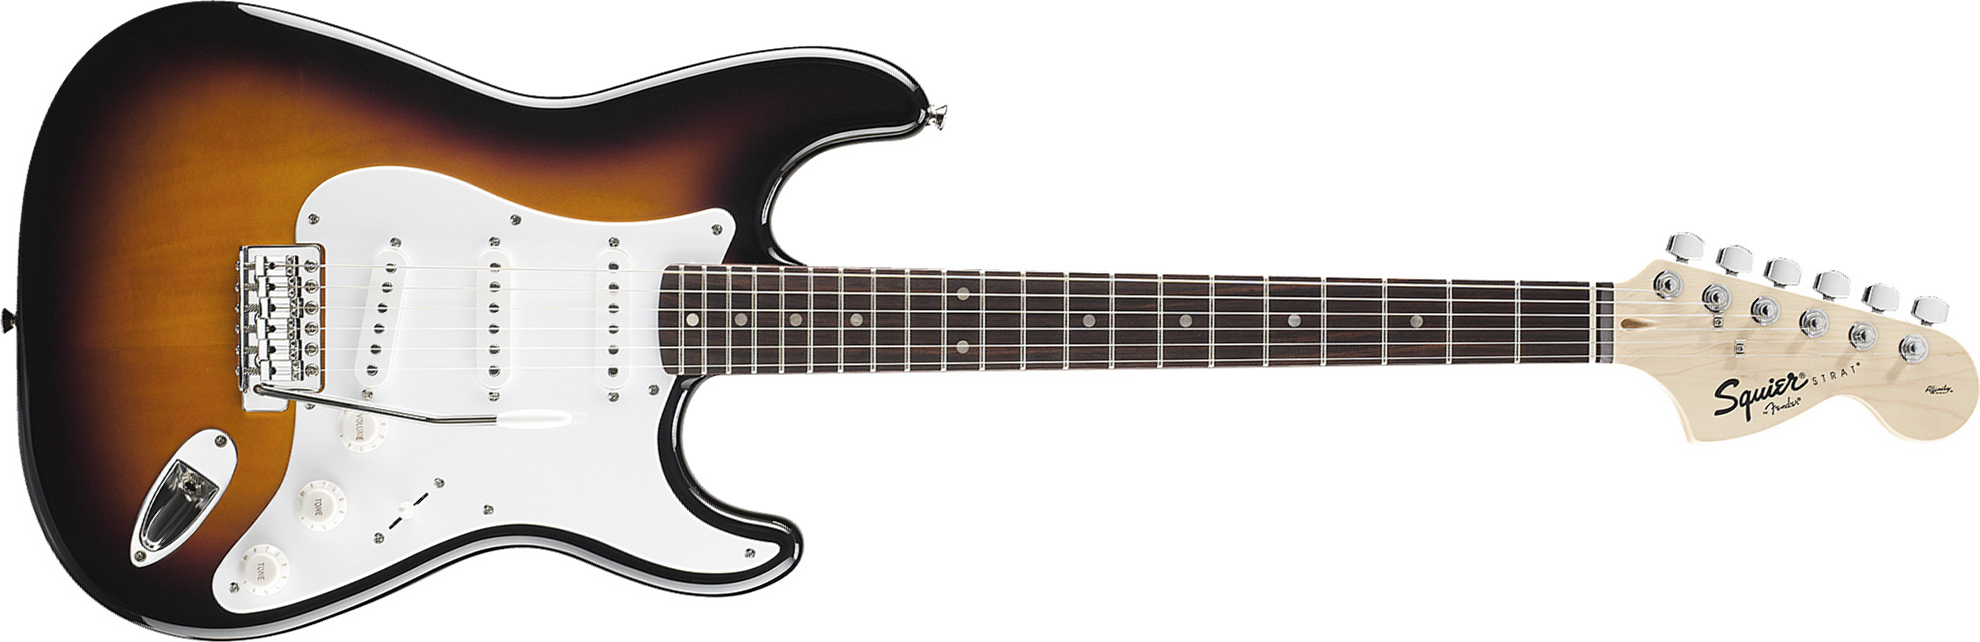 Squier Strat Affinity Series 3s Lau - Brown Sunburst - Str shape electric guitar - Main picture